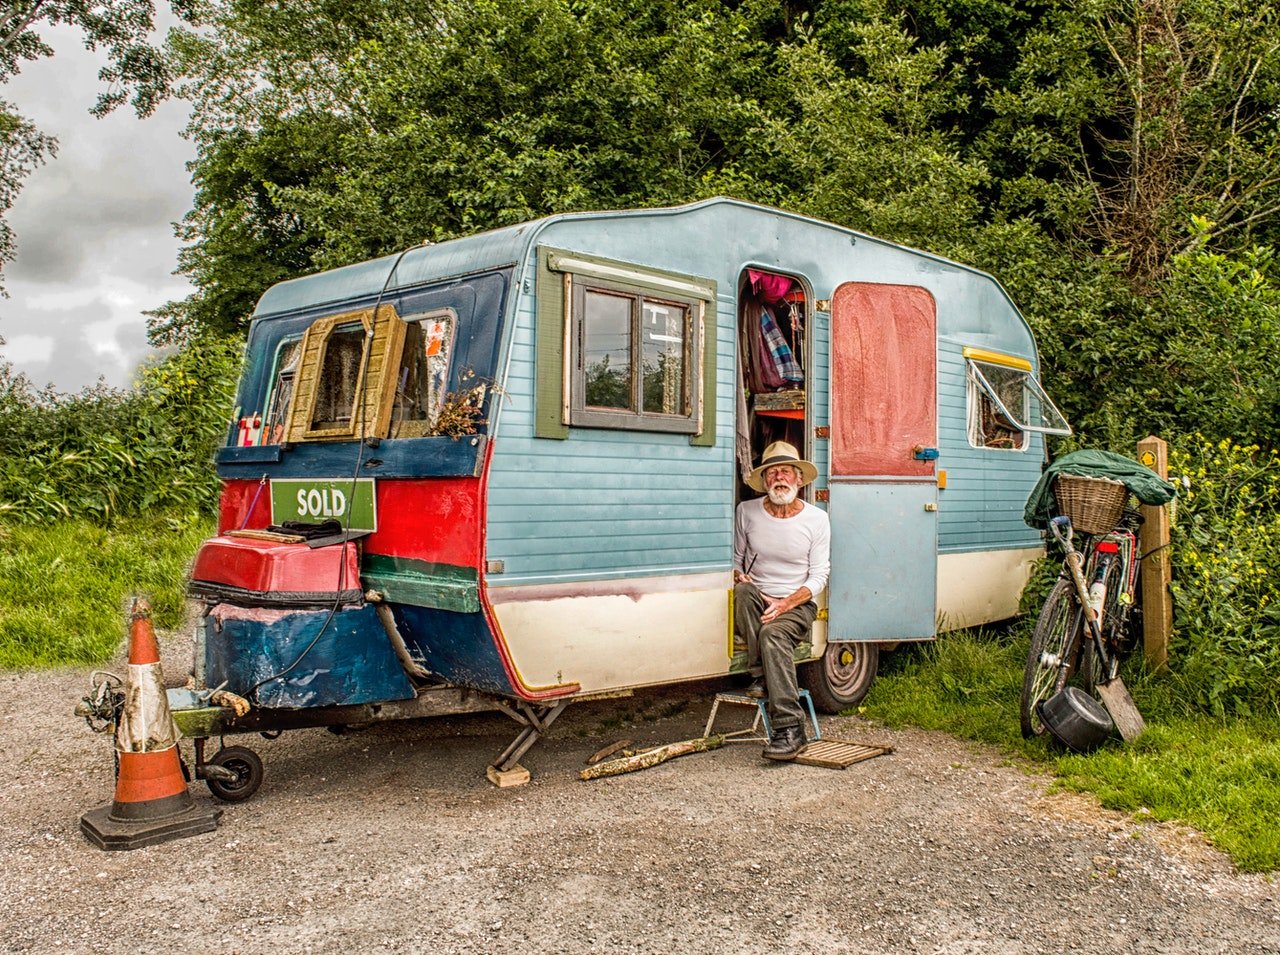 Le grand-oncle d'OP vivait dans une caravane sale | Source : Pexels